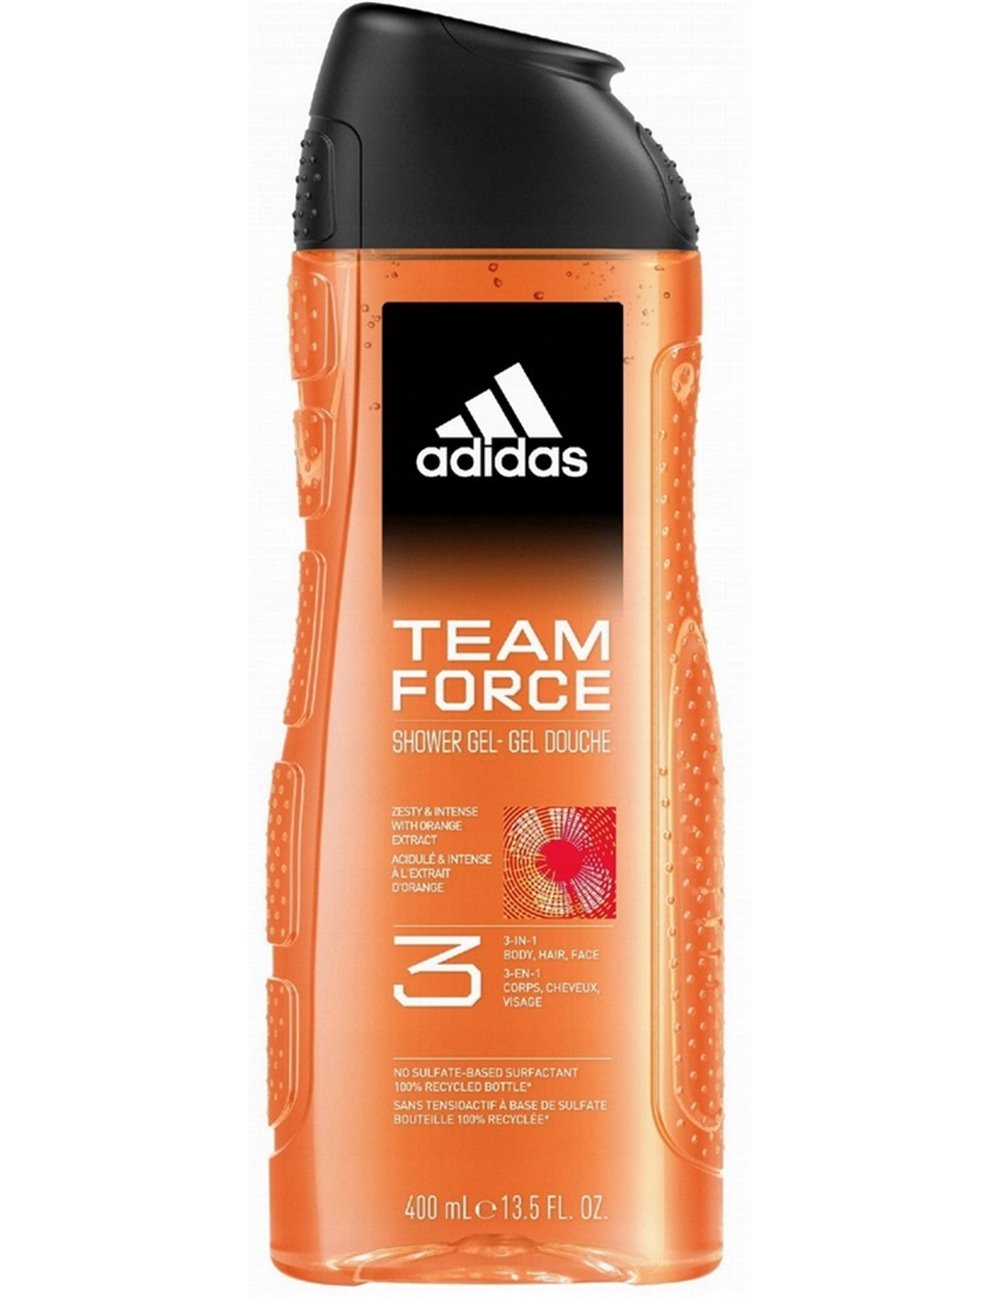 Adidas Team Force Stimulating Męski Żel pod Prysznic do Ciała, Włosów i Twarzy 400 ml – z ekstraktem z pomarańczy